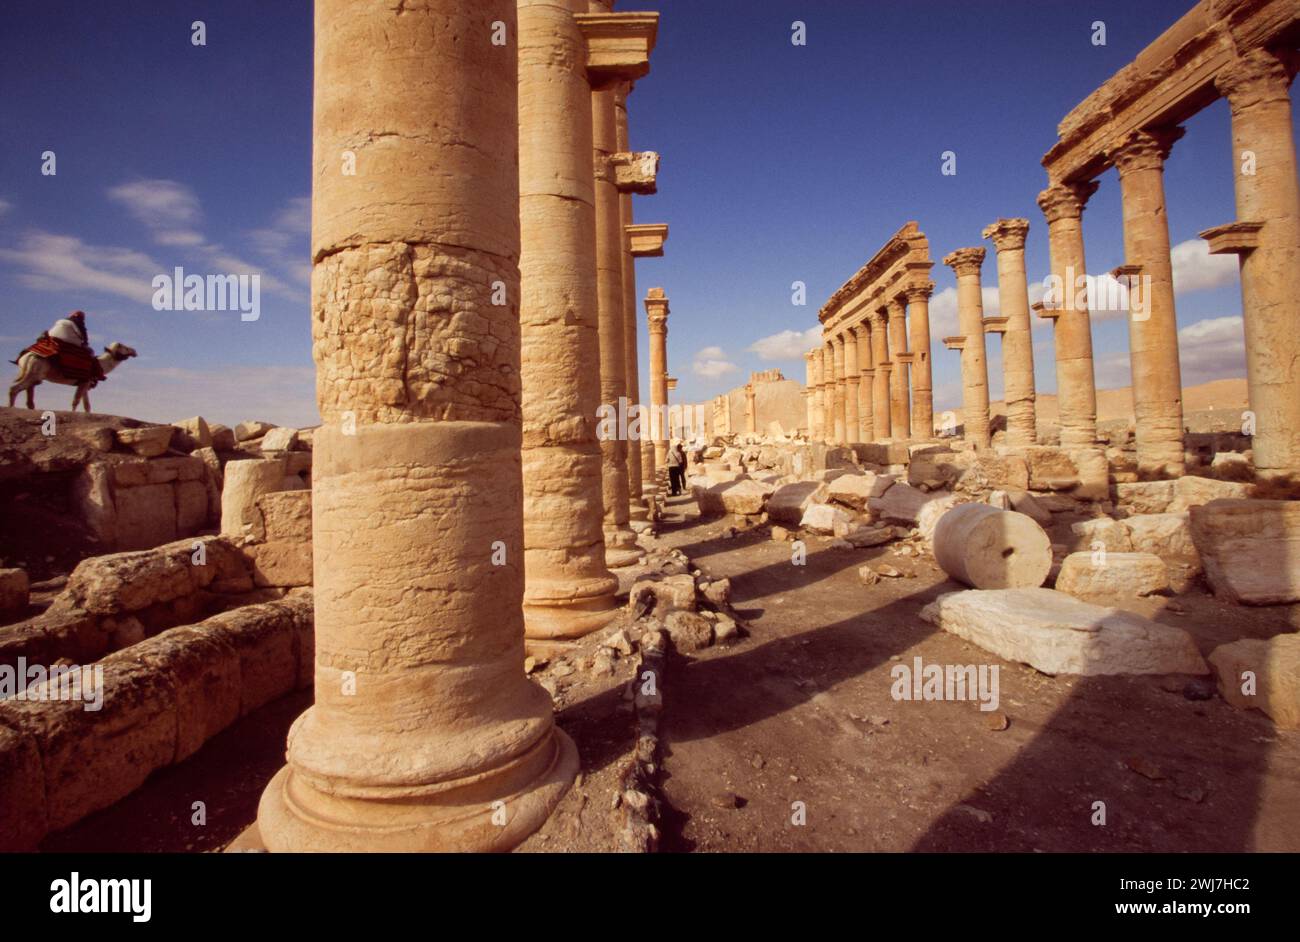 Oasis dans le désert syrien, au nord-est de Damas, Palmyre contient les ruines monumentales d'une grande ville.Syrie Banque D'Images